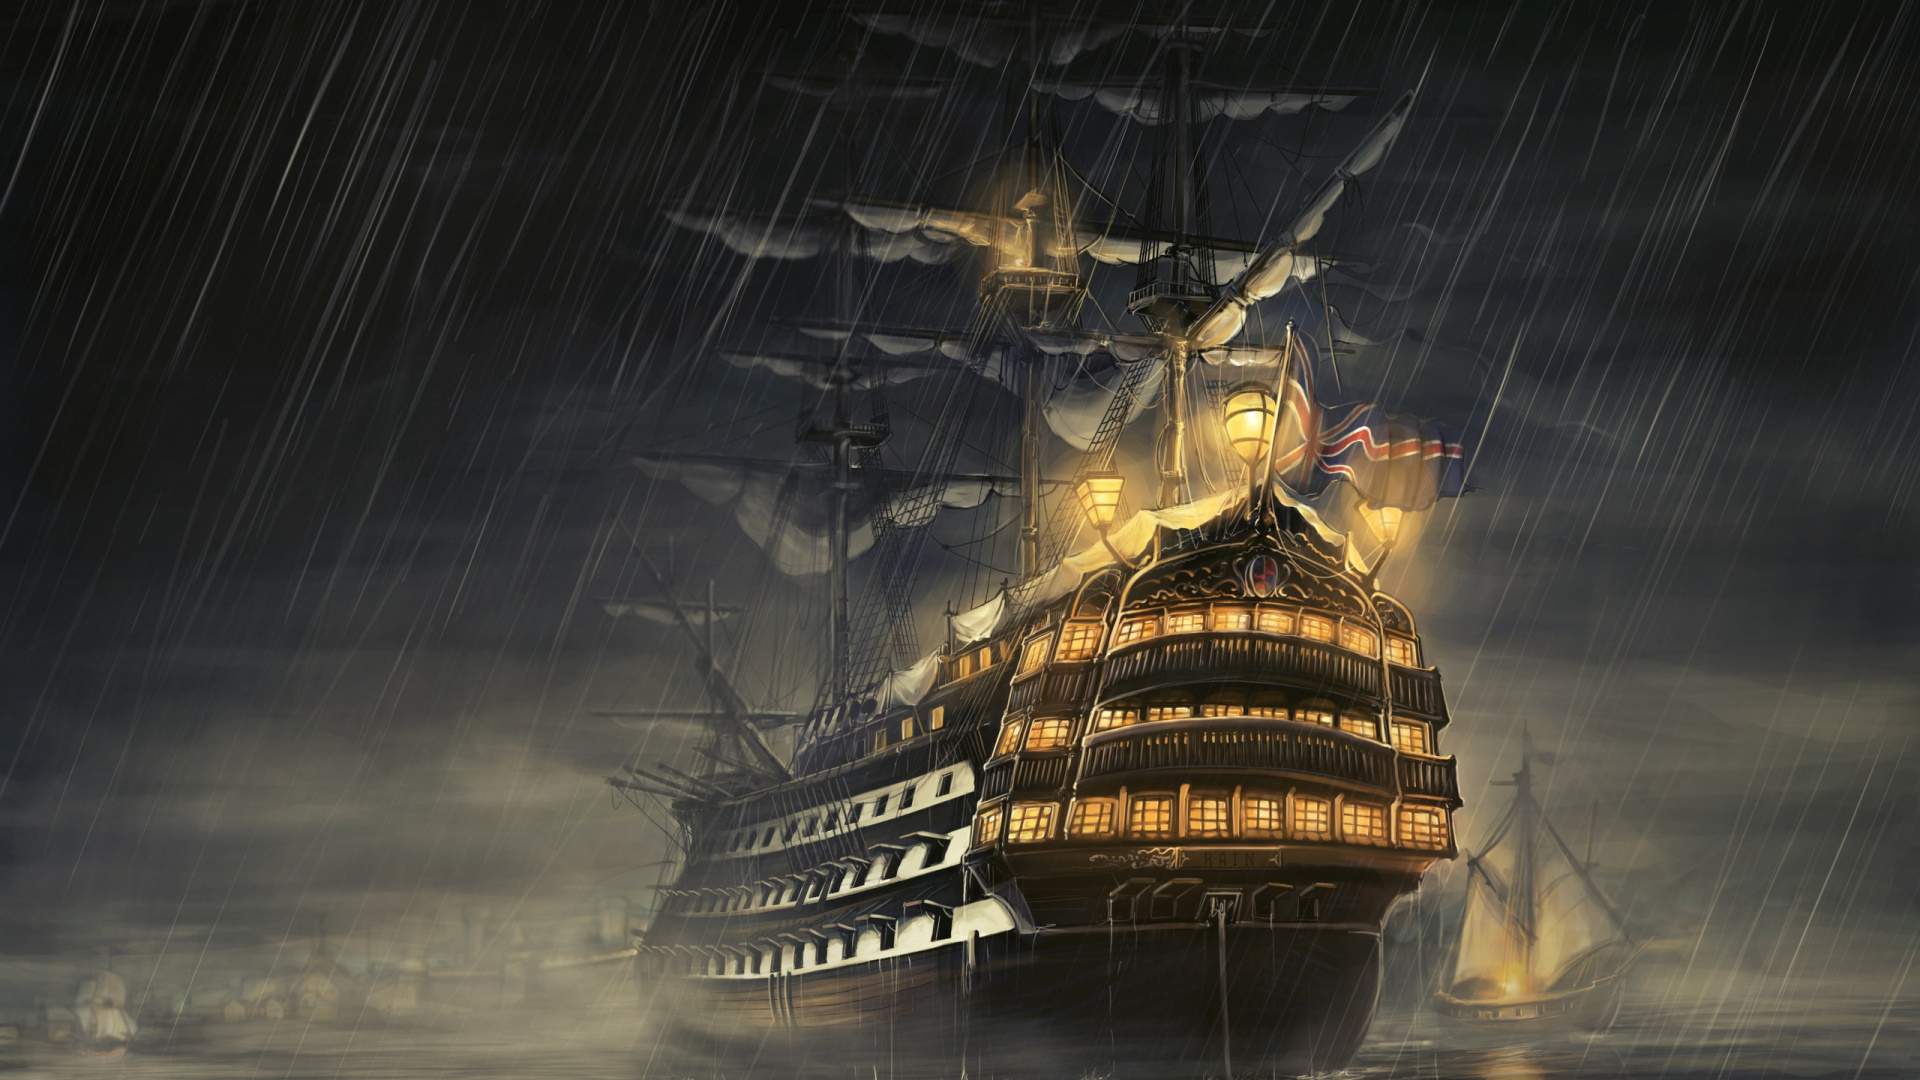 马尼拉大帆船, 船舶线路, 东indiaman, 幽灵船, 旗舰 壁纸 1920x1080 允许